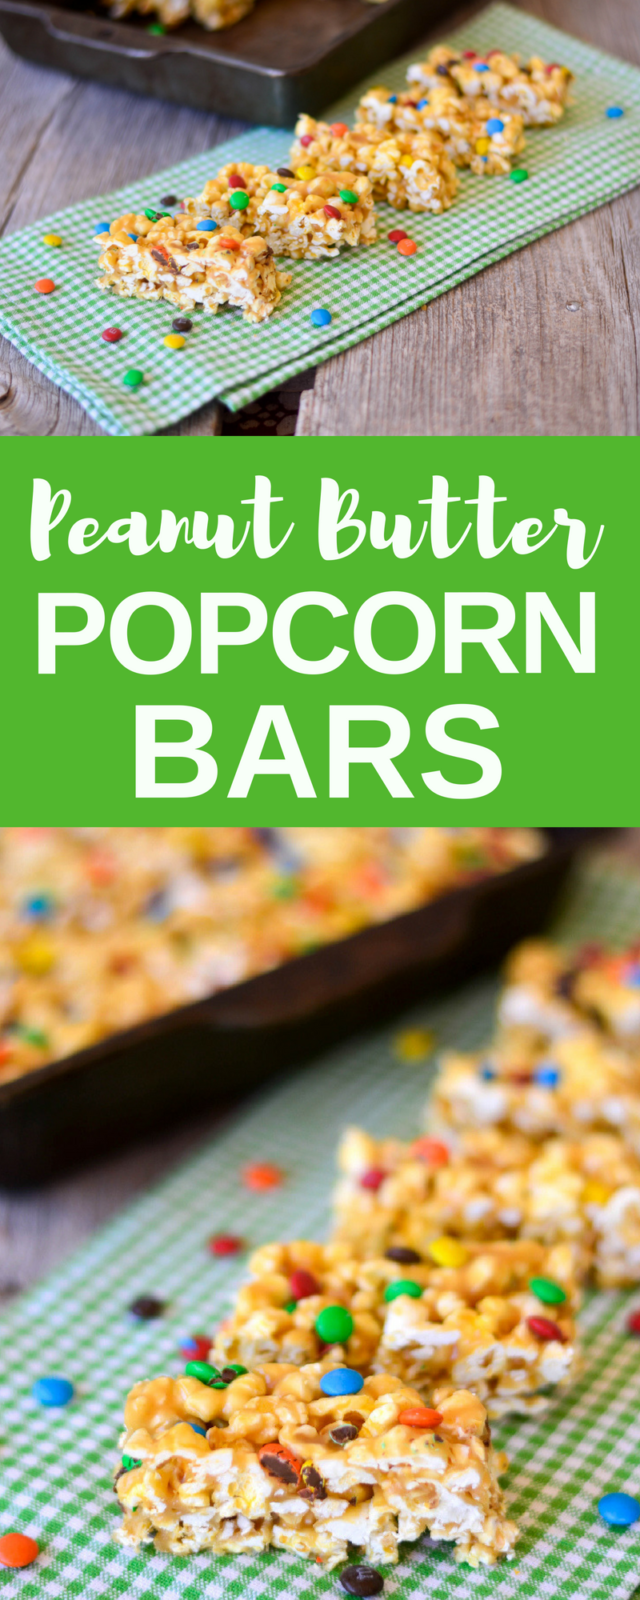 Peanut Butter Popcorn Bars